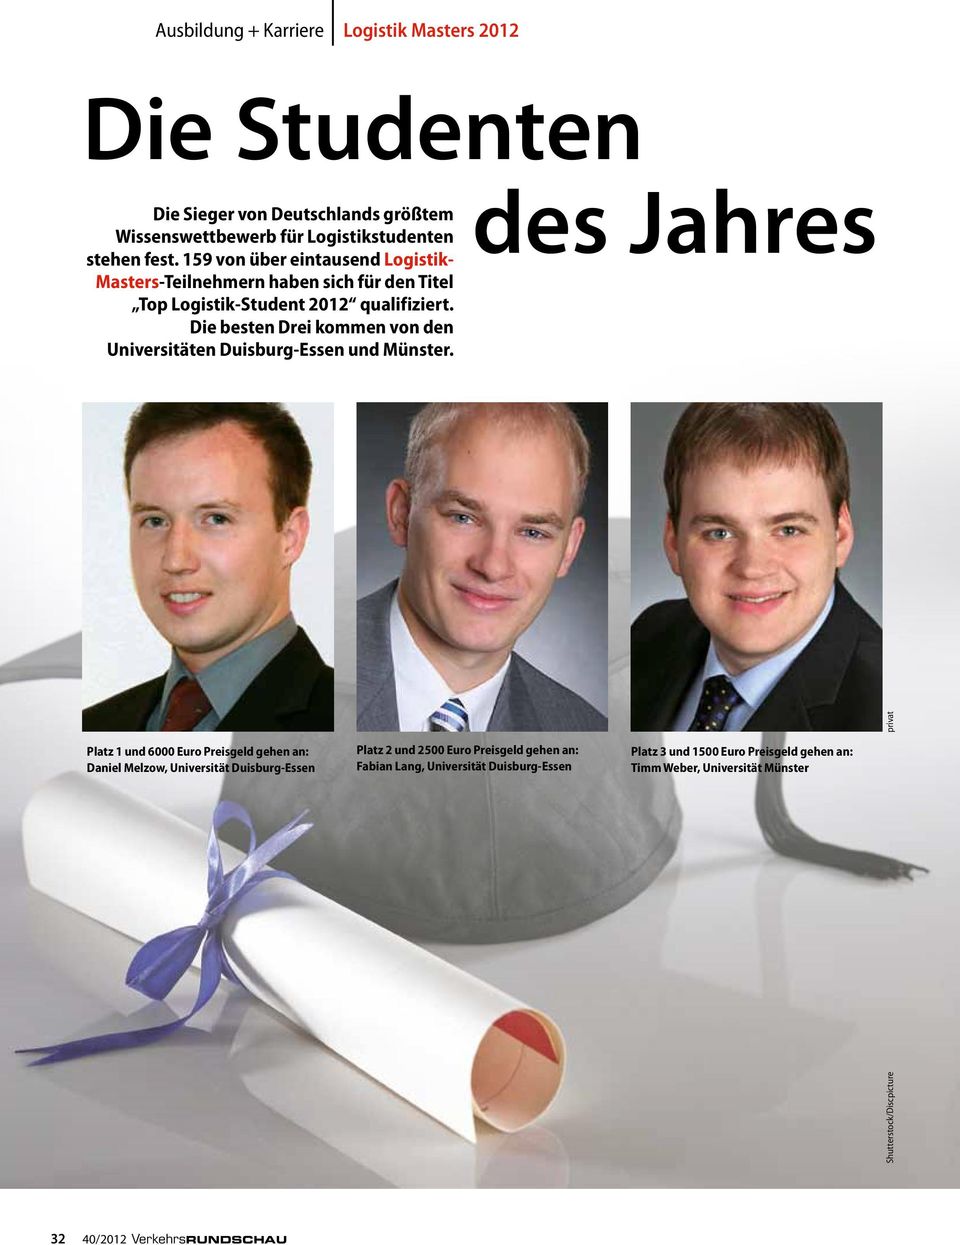 Die besten Drei kommen von den Universitäten Duisburg-Essen und Münster.